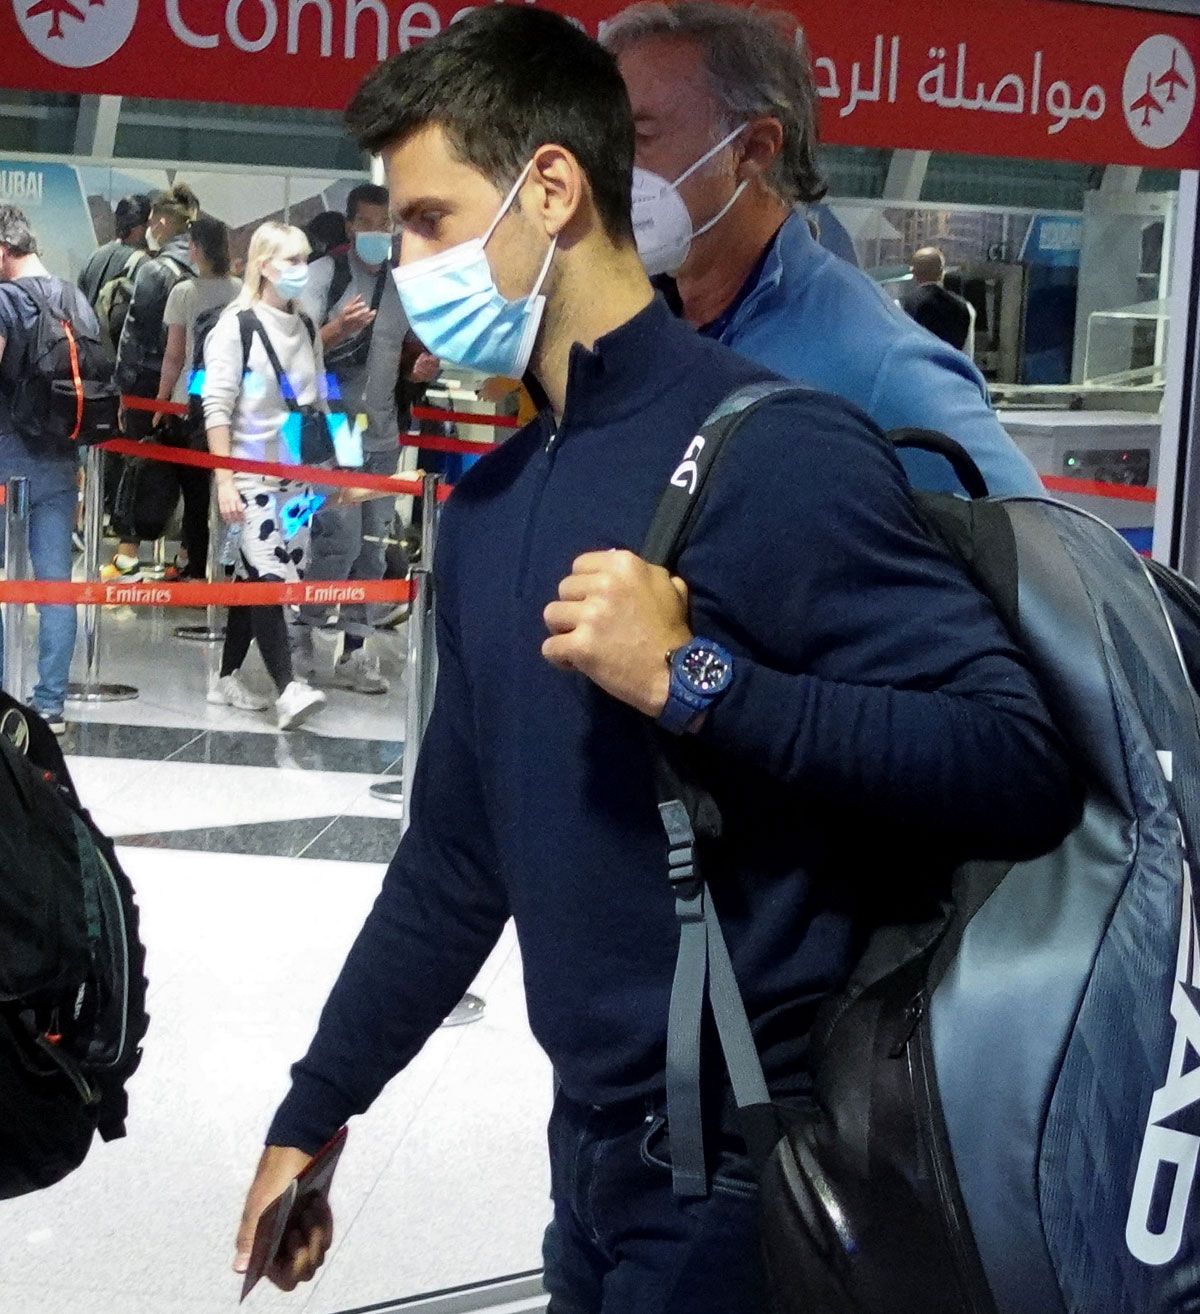 Aus lawmaker pushes for staying of Djokovic's visa ban